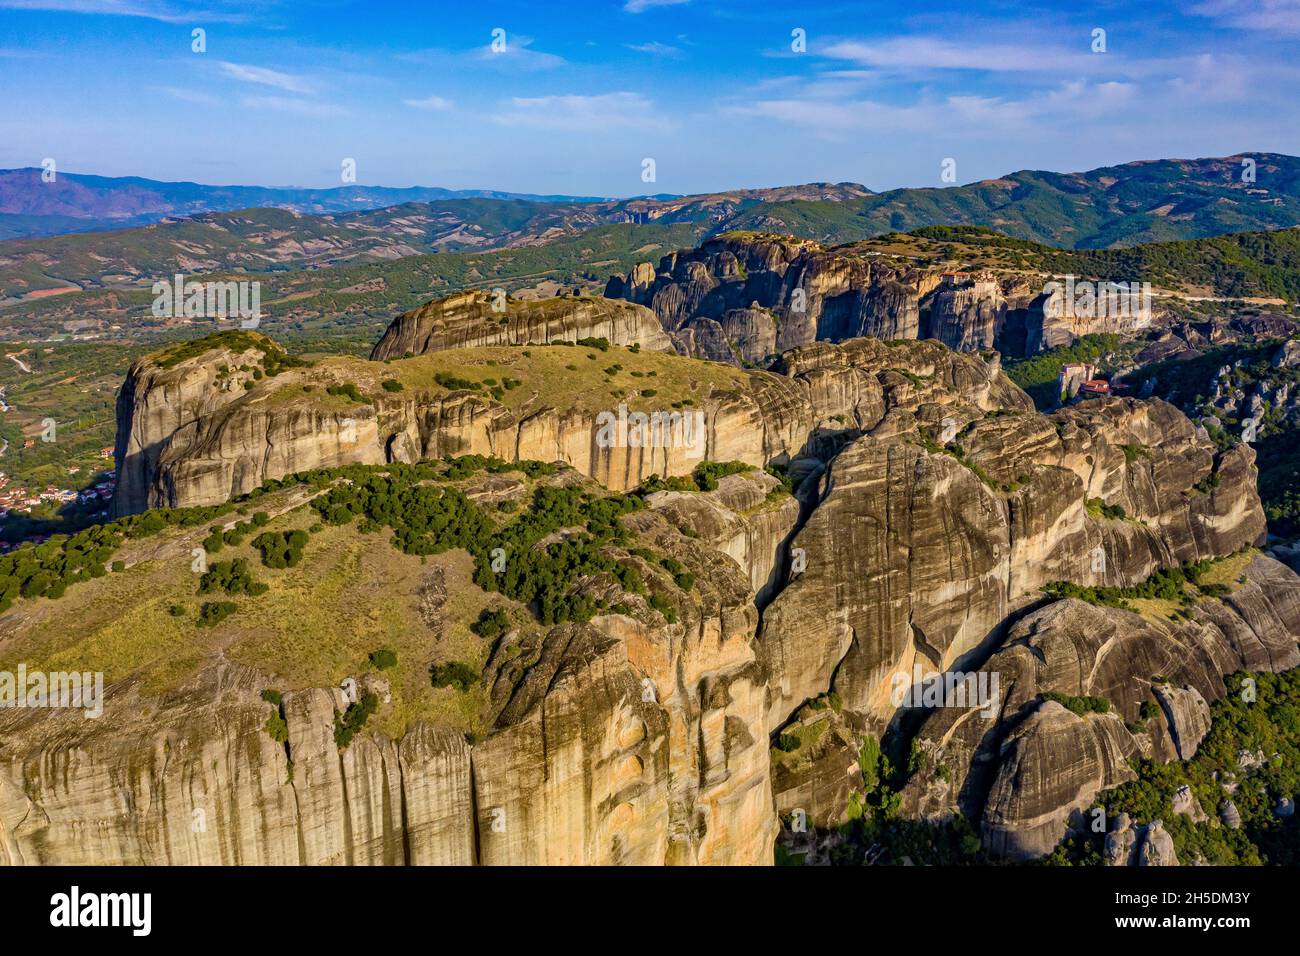 Meteora Klöster aus der Luft | Luftbilder von den Meteora Klöstern in Griechenland | Meteora monasteri in Grecia dall'alto Foto Stock